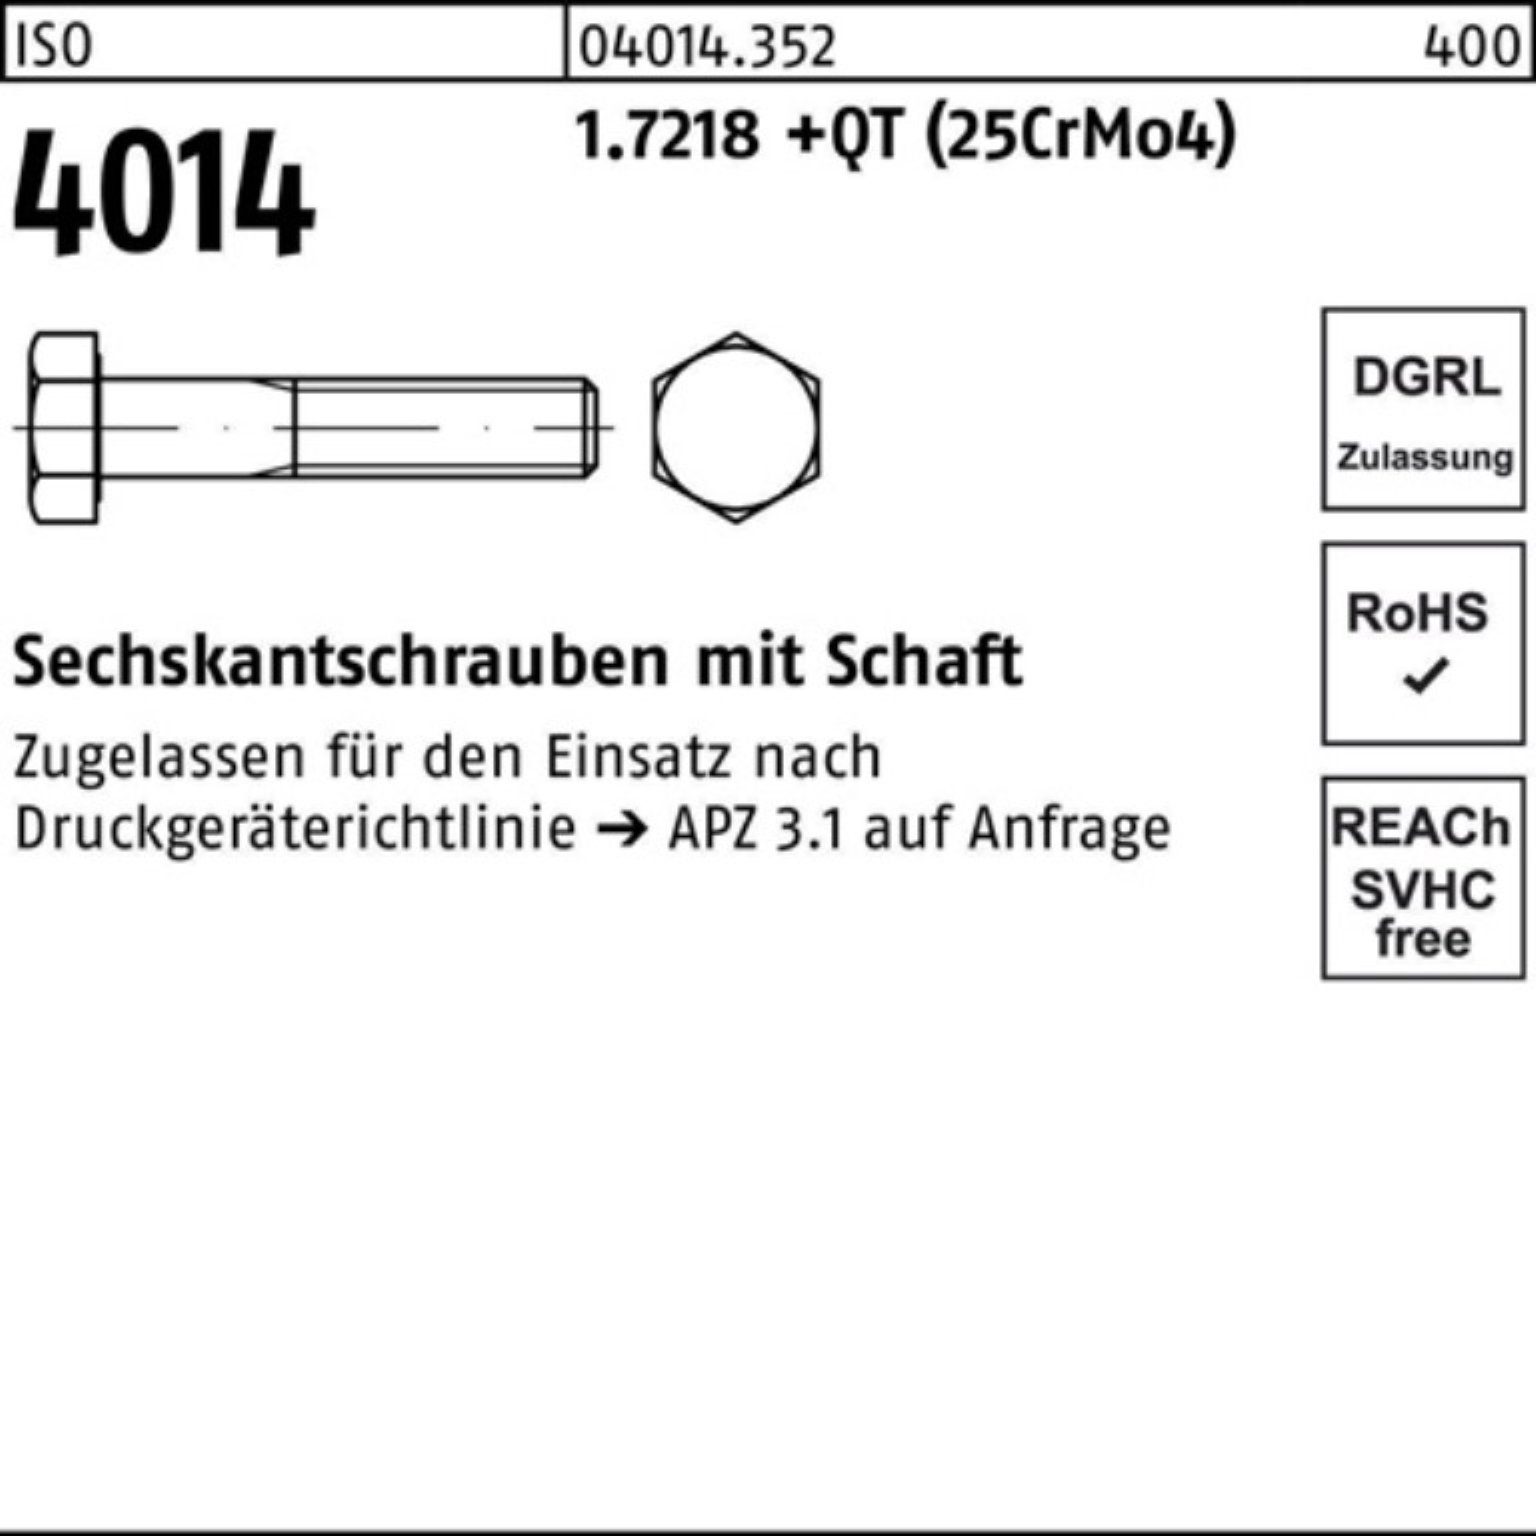 140 Bufab M33x Pack Sechskantschraube 100er +QT Schaft 4014 1.7218 ISO (25Cr Sechskantschraube